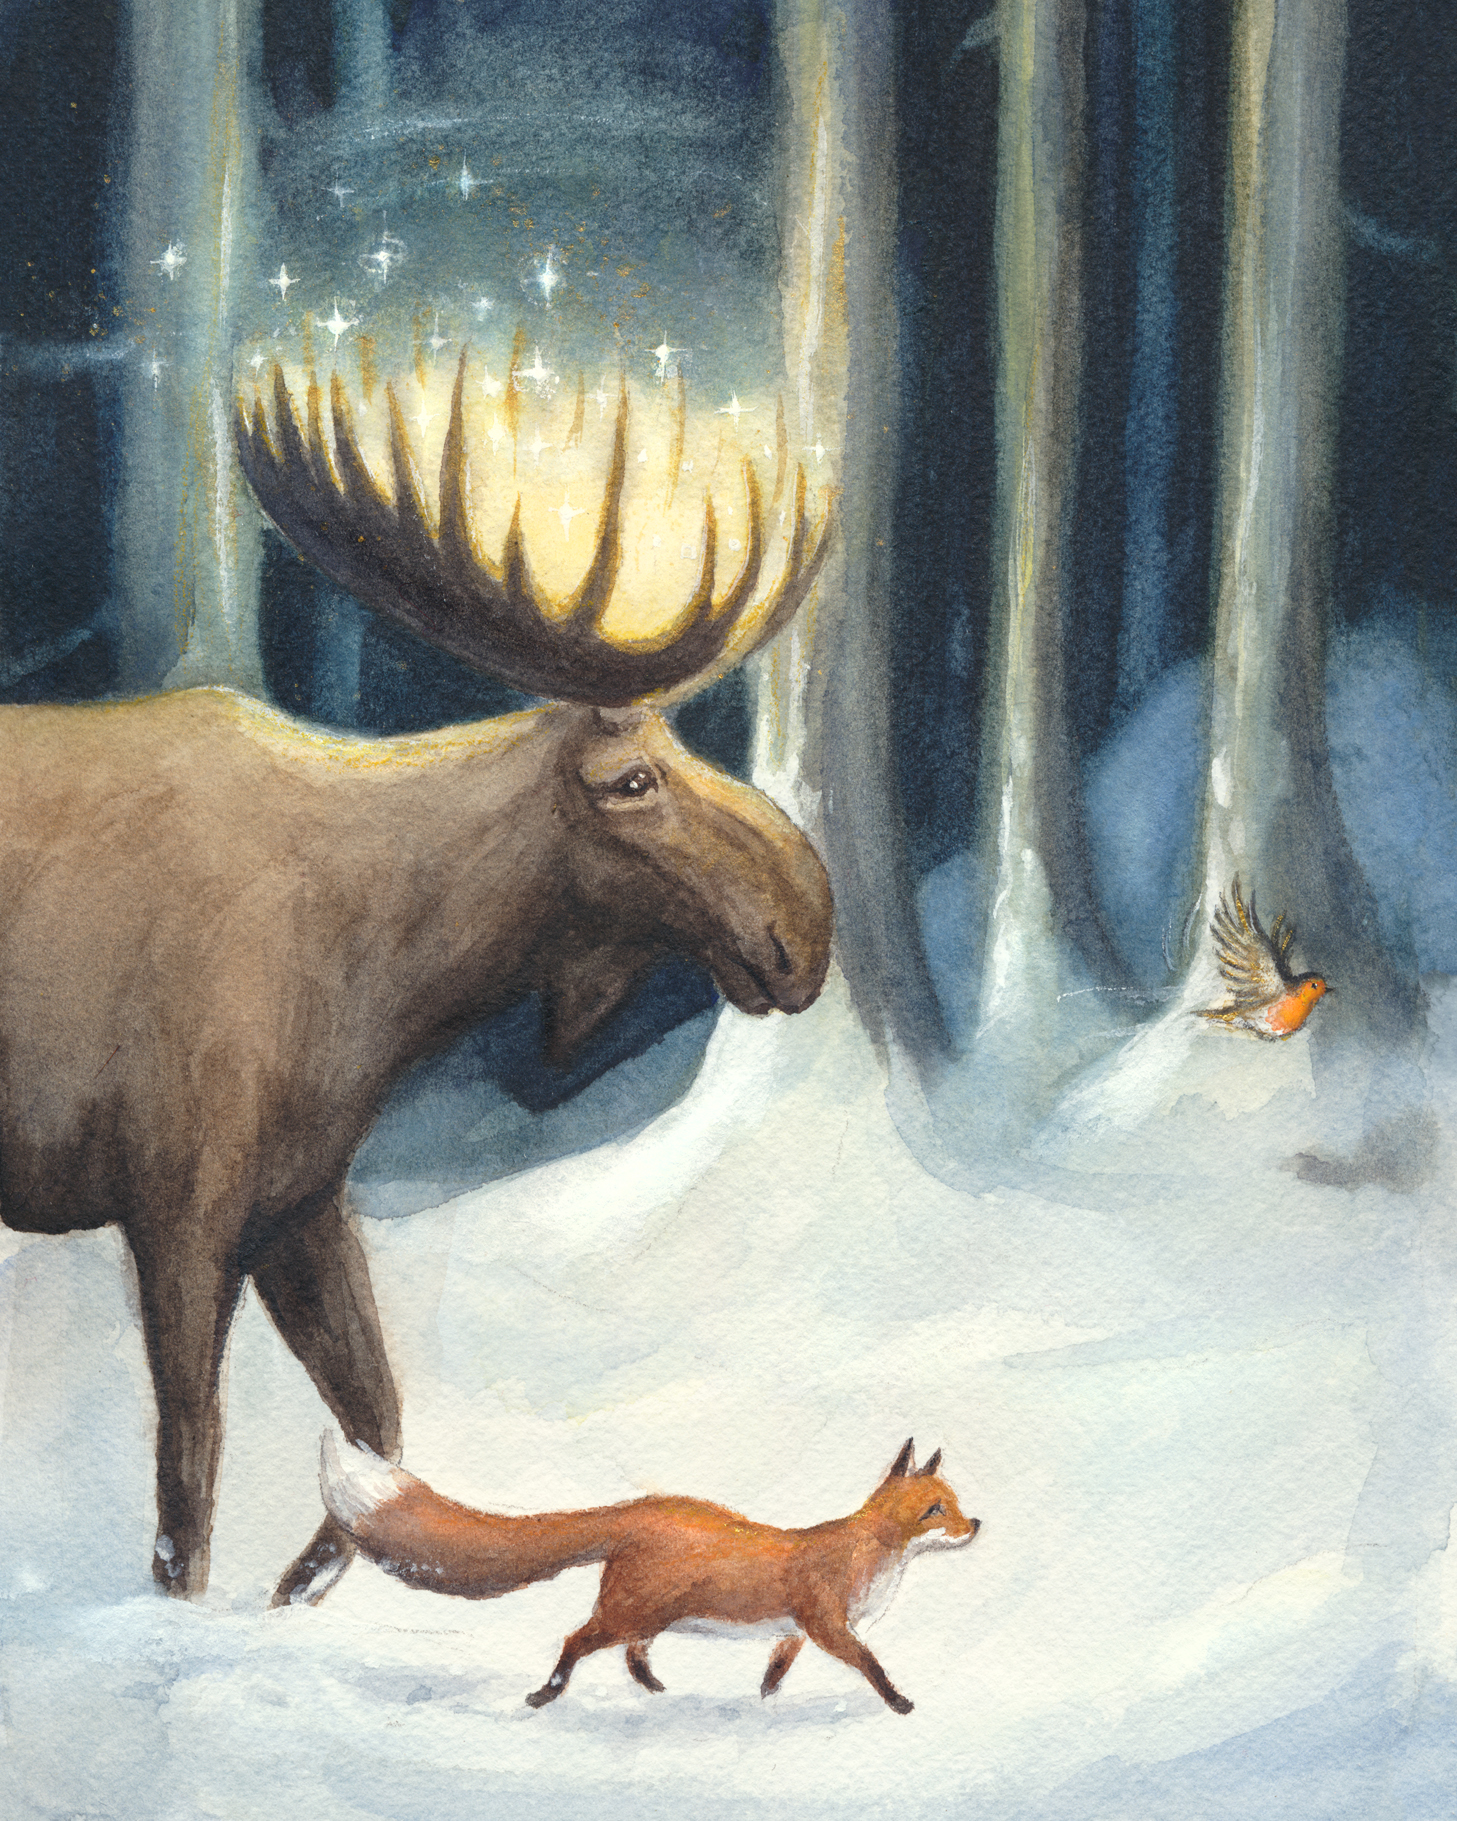 "Midvintersnatt". Julkort med älg, räv och rödhake i snöklädd vinterskog. Illustrationer i akvarell till julkort för Pandaförsäljningen, där en del av vinsten går till WWFs arbete. Temat är svensk natur och djur med en magisk känsla.